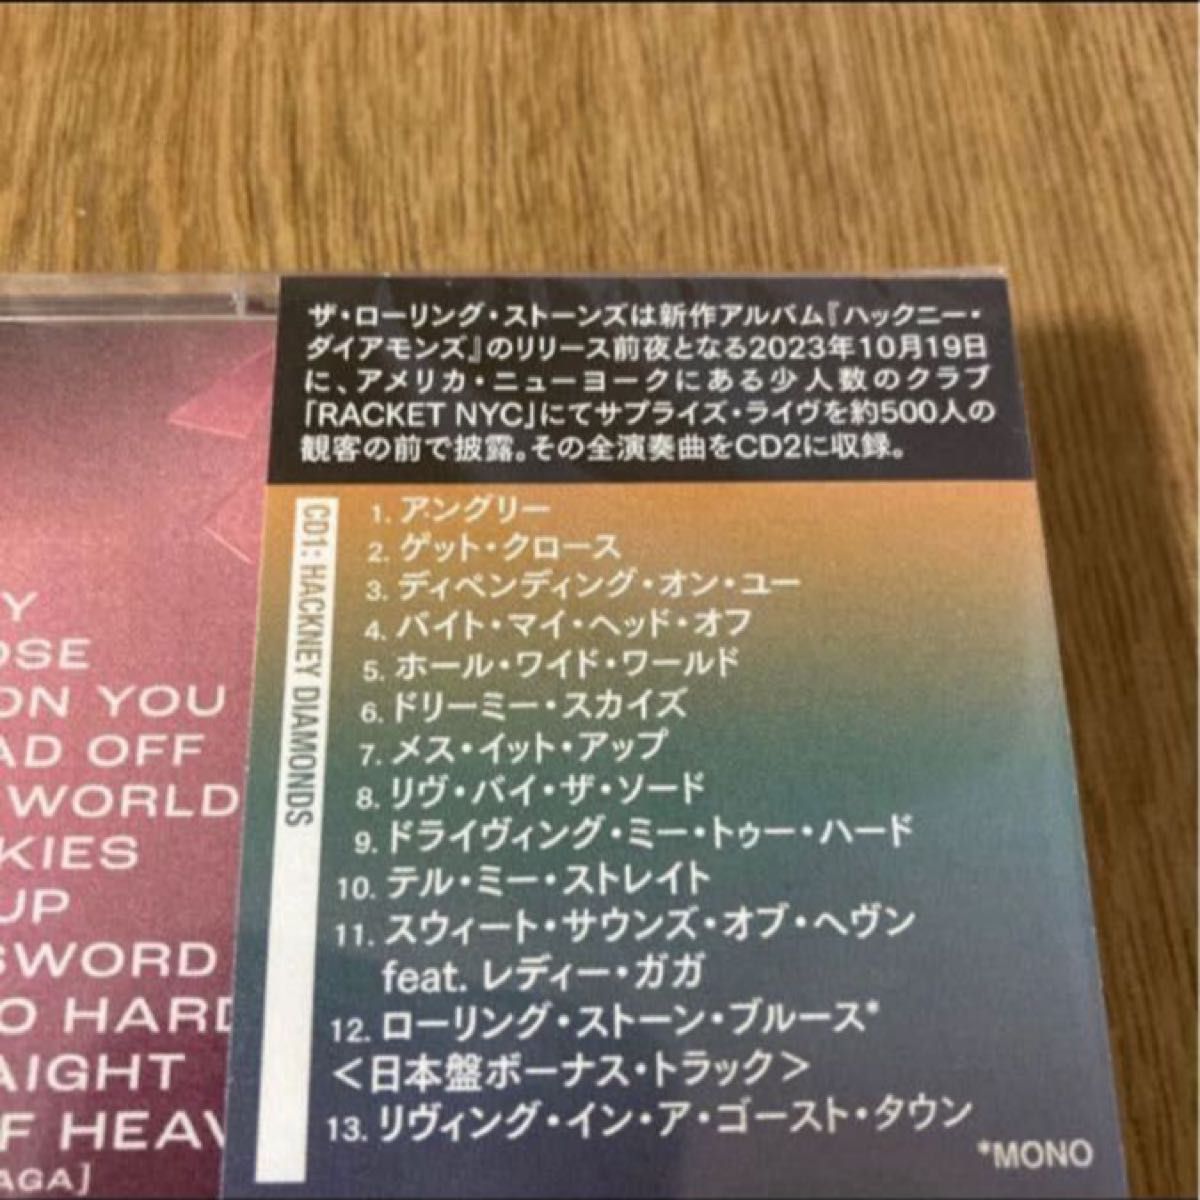 限定盤 デジパック仕様 ★ザローリングストーンズ 2SHM-CD/ハックニーダイアモンズ 【2CDライヴエディション】 